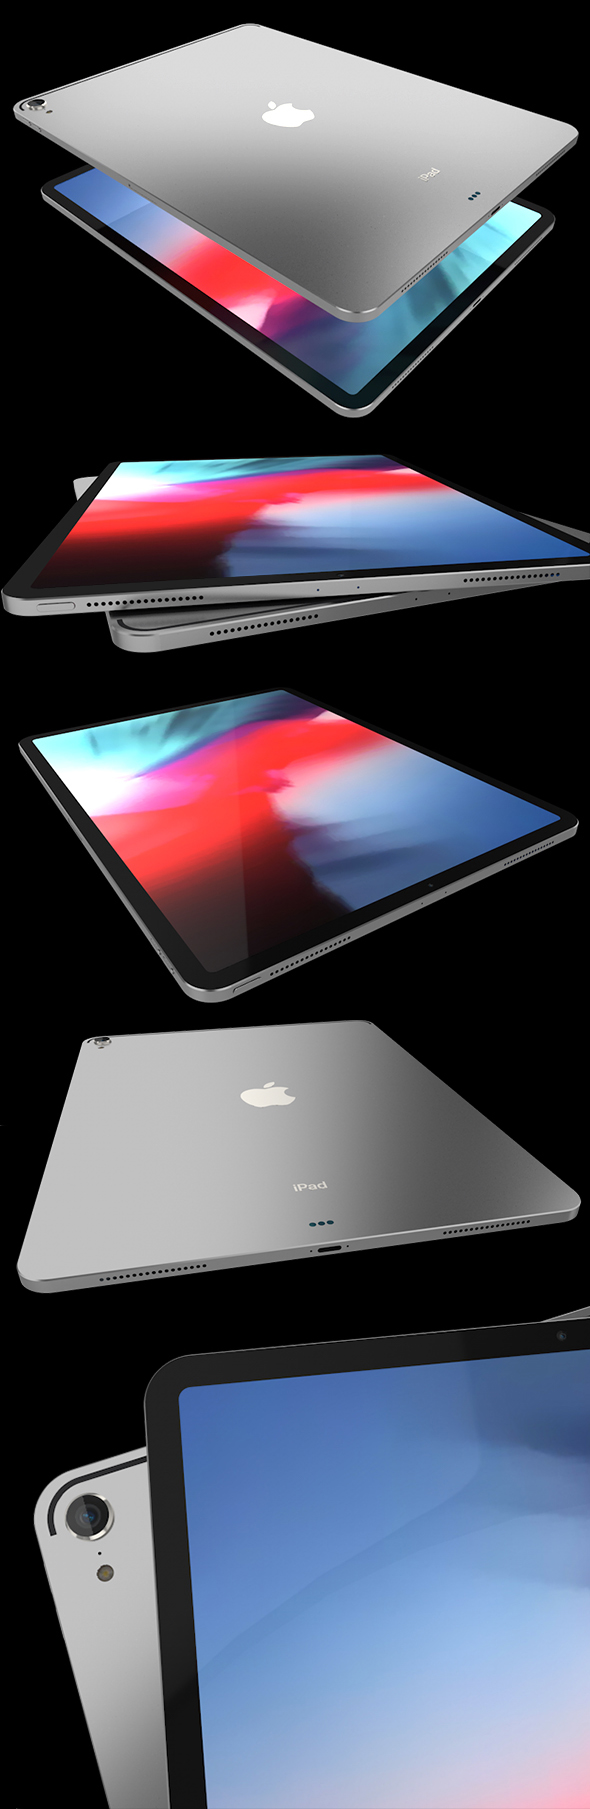 iPad Pro X - 3Docean 22833153